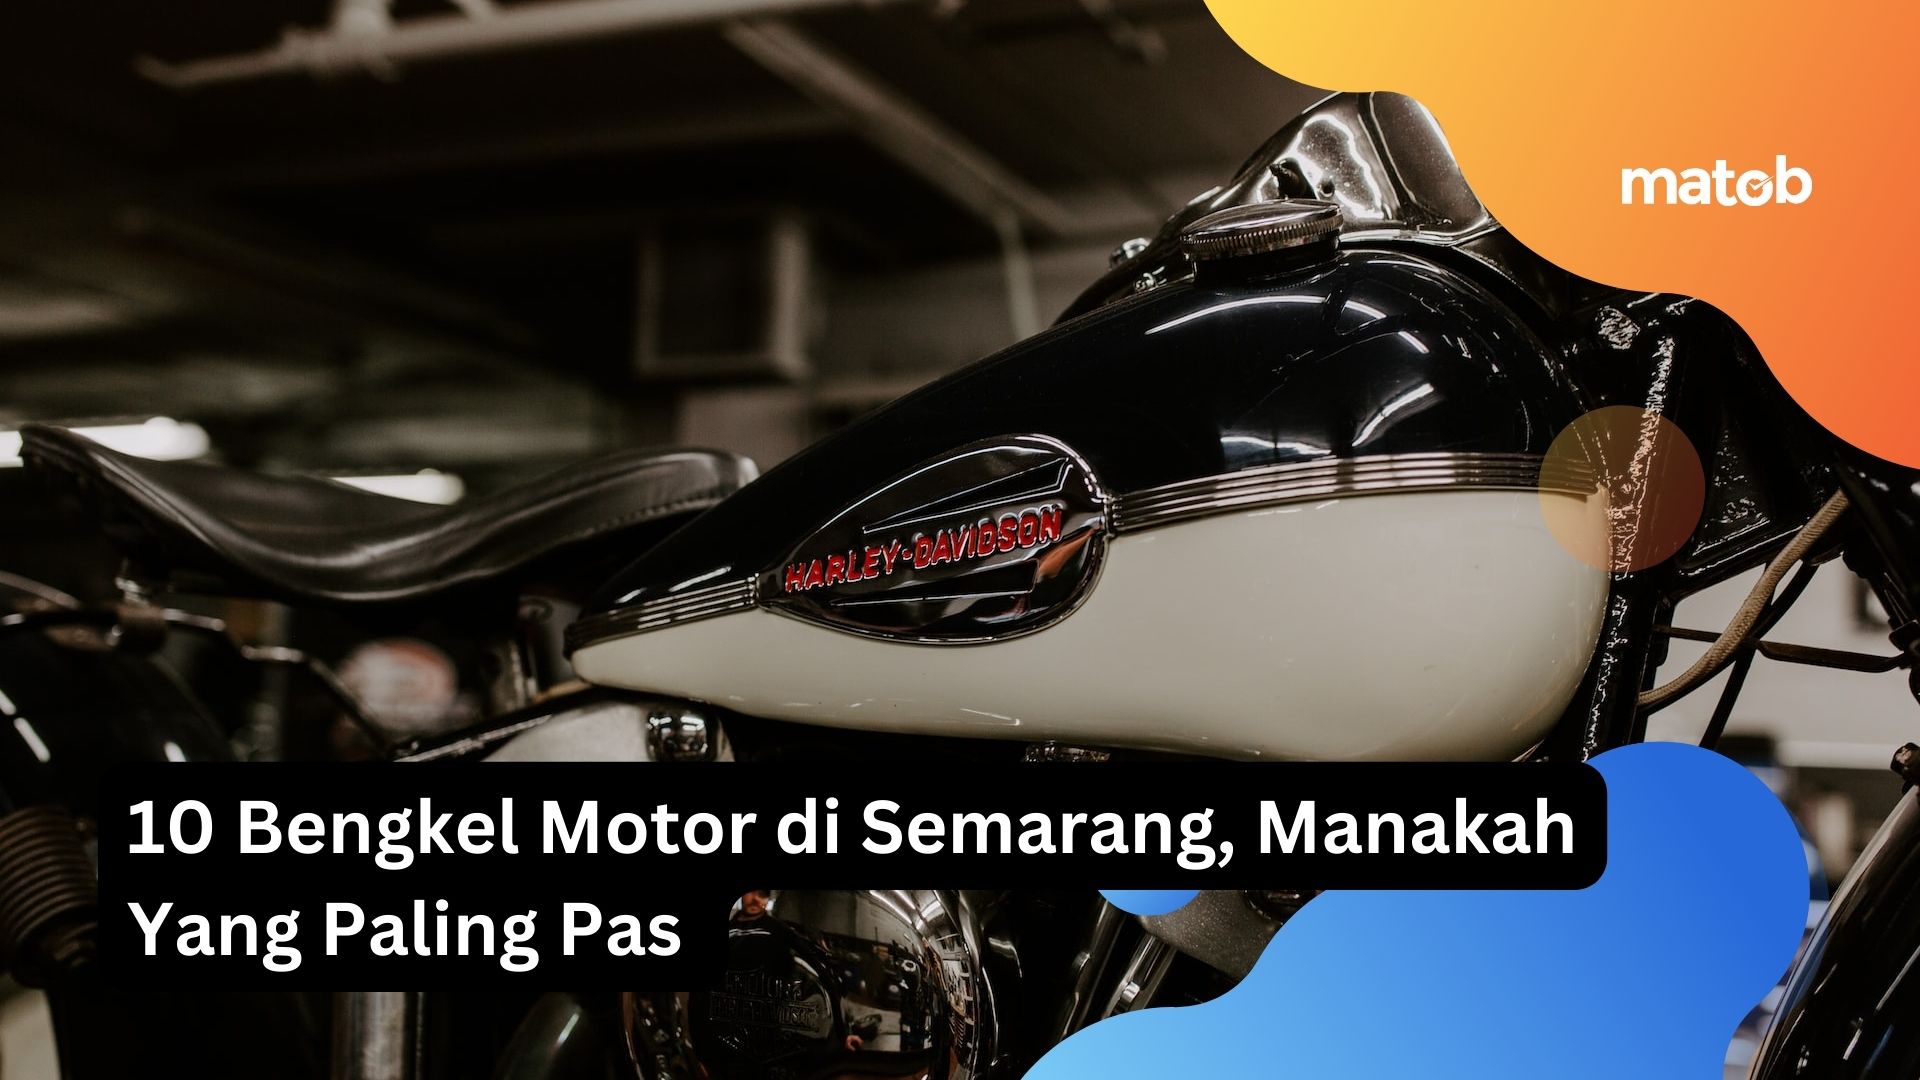 10 Bengkel Motor di Semarang, Manakah Yang Paling Pas